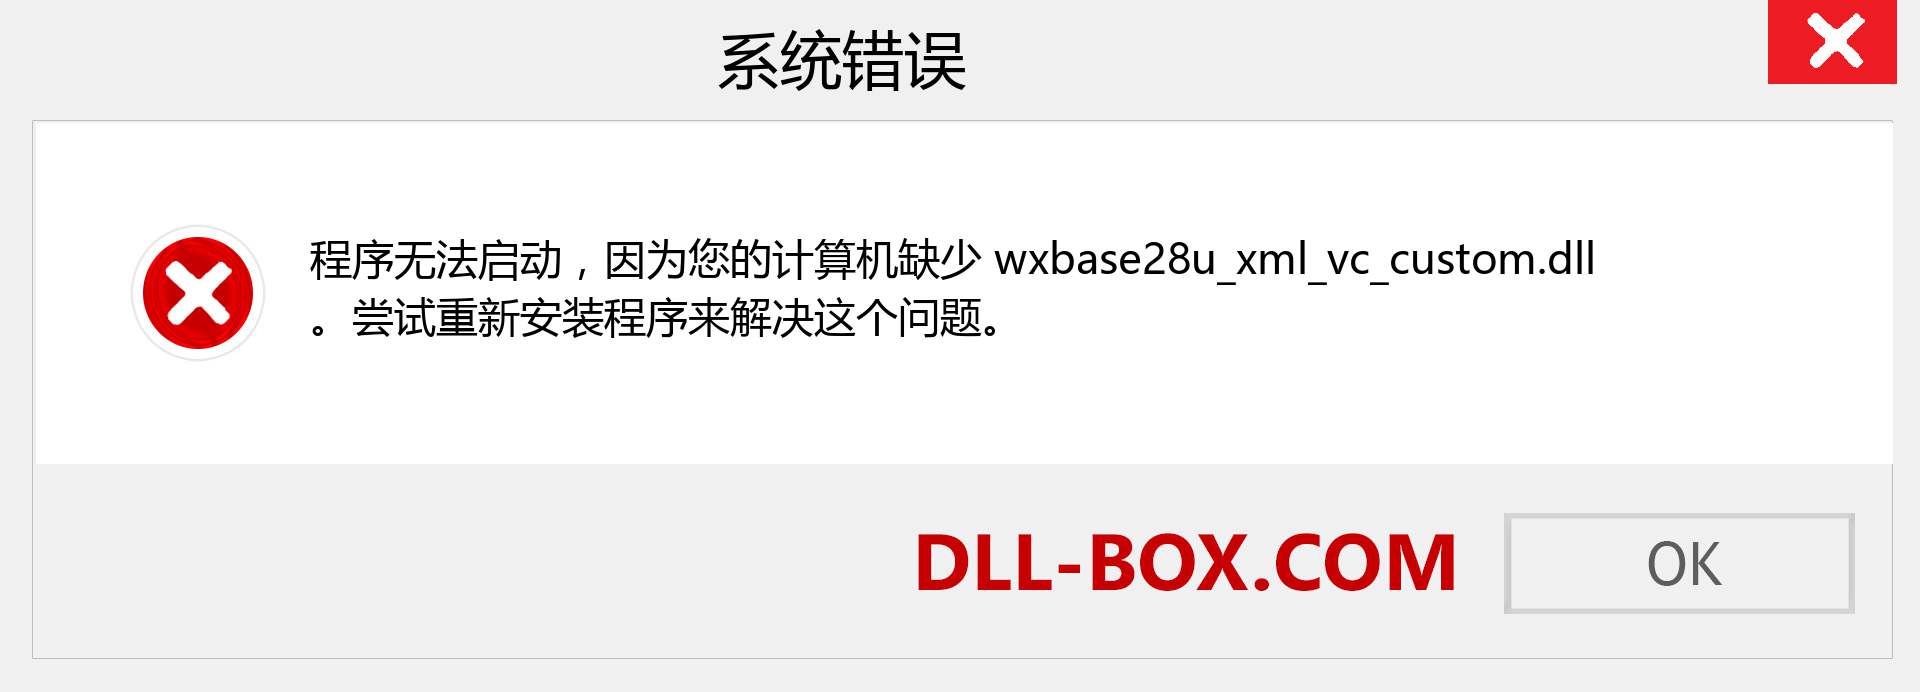 wxbase28u_xml_vc_custom.dll 文件丢失？。 适用于 Windows 7、8、10 的下载 - 修复 Windows、照片、图像上的 wxbase28u_xml_vc_custom dll 丢失错误